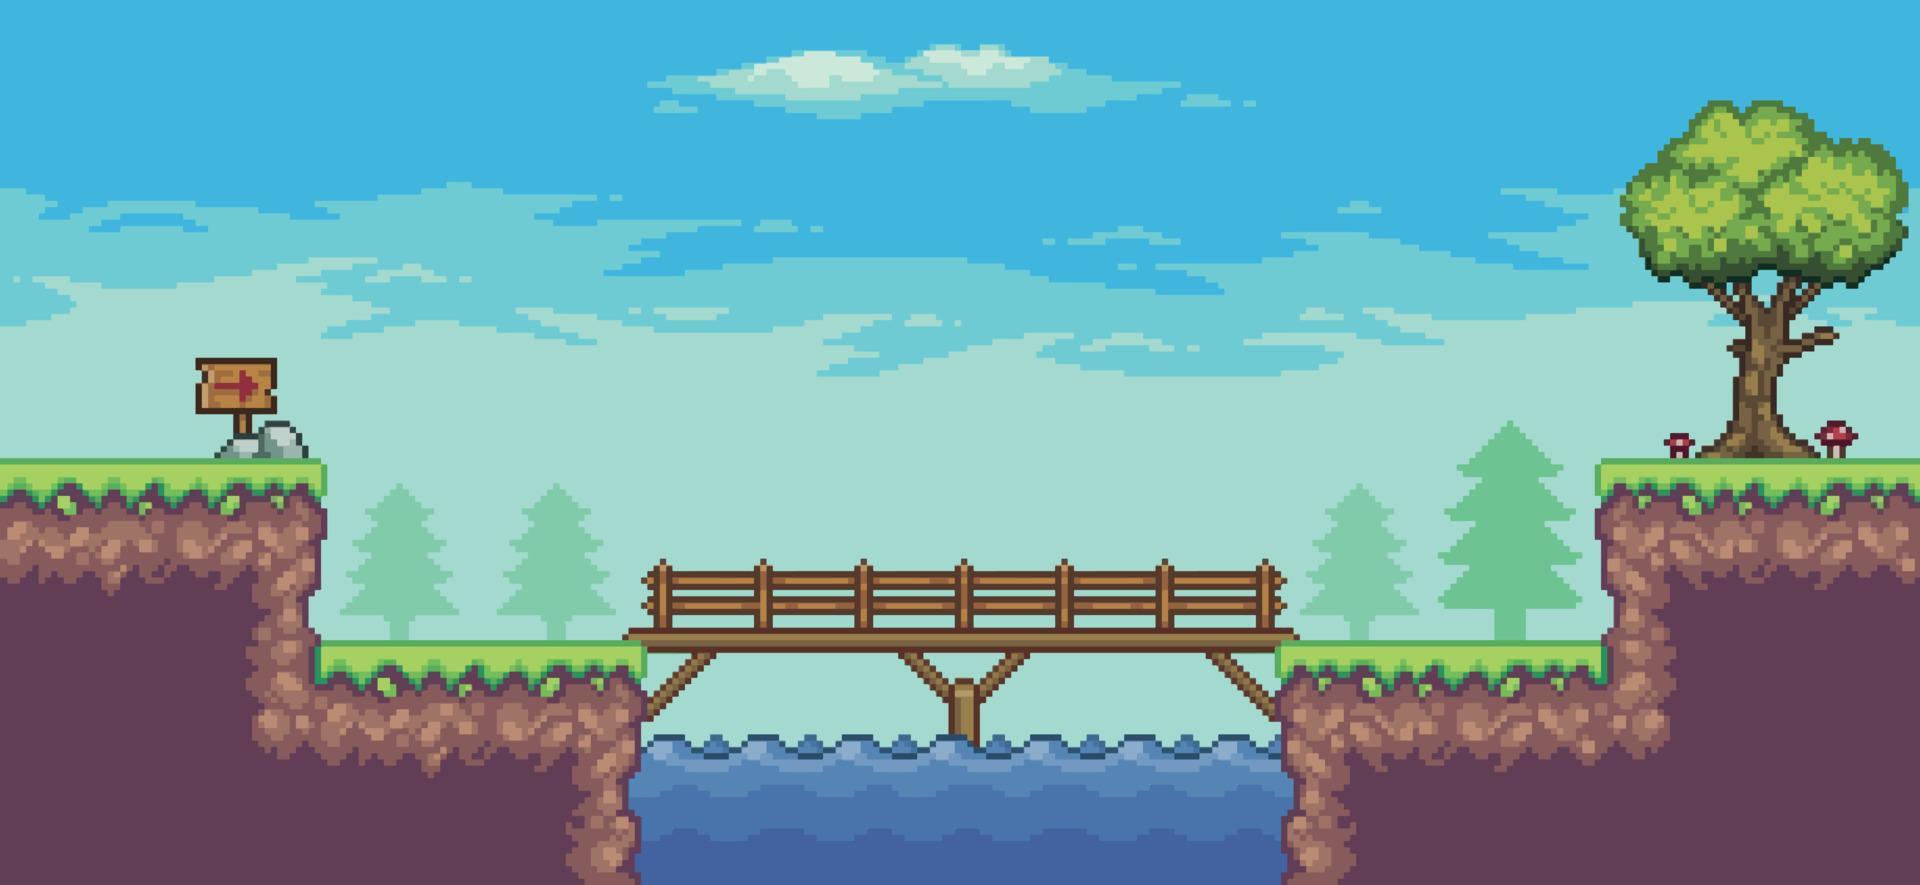 Pixelkunst-Arcade-Spielszene mit Baum, See, Brücke, Zaun, Brett und Wolken 8-Bit-Vektorhintergrund vektor